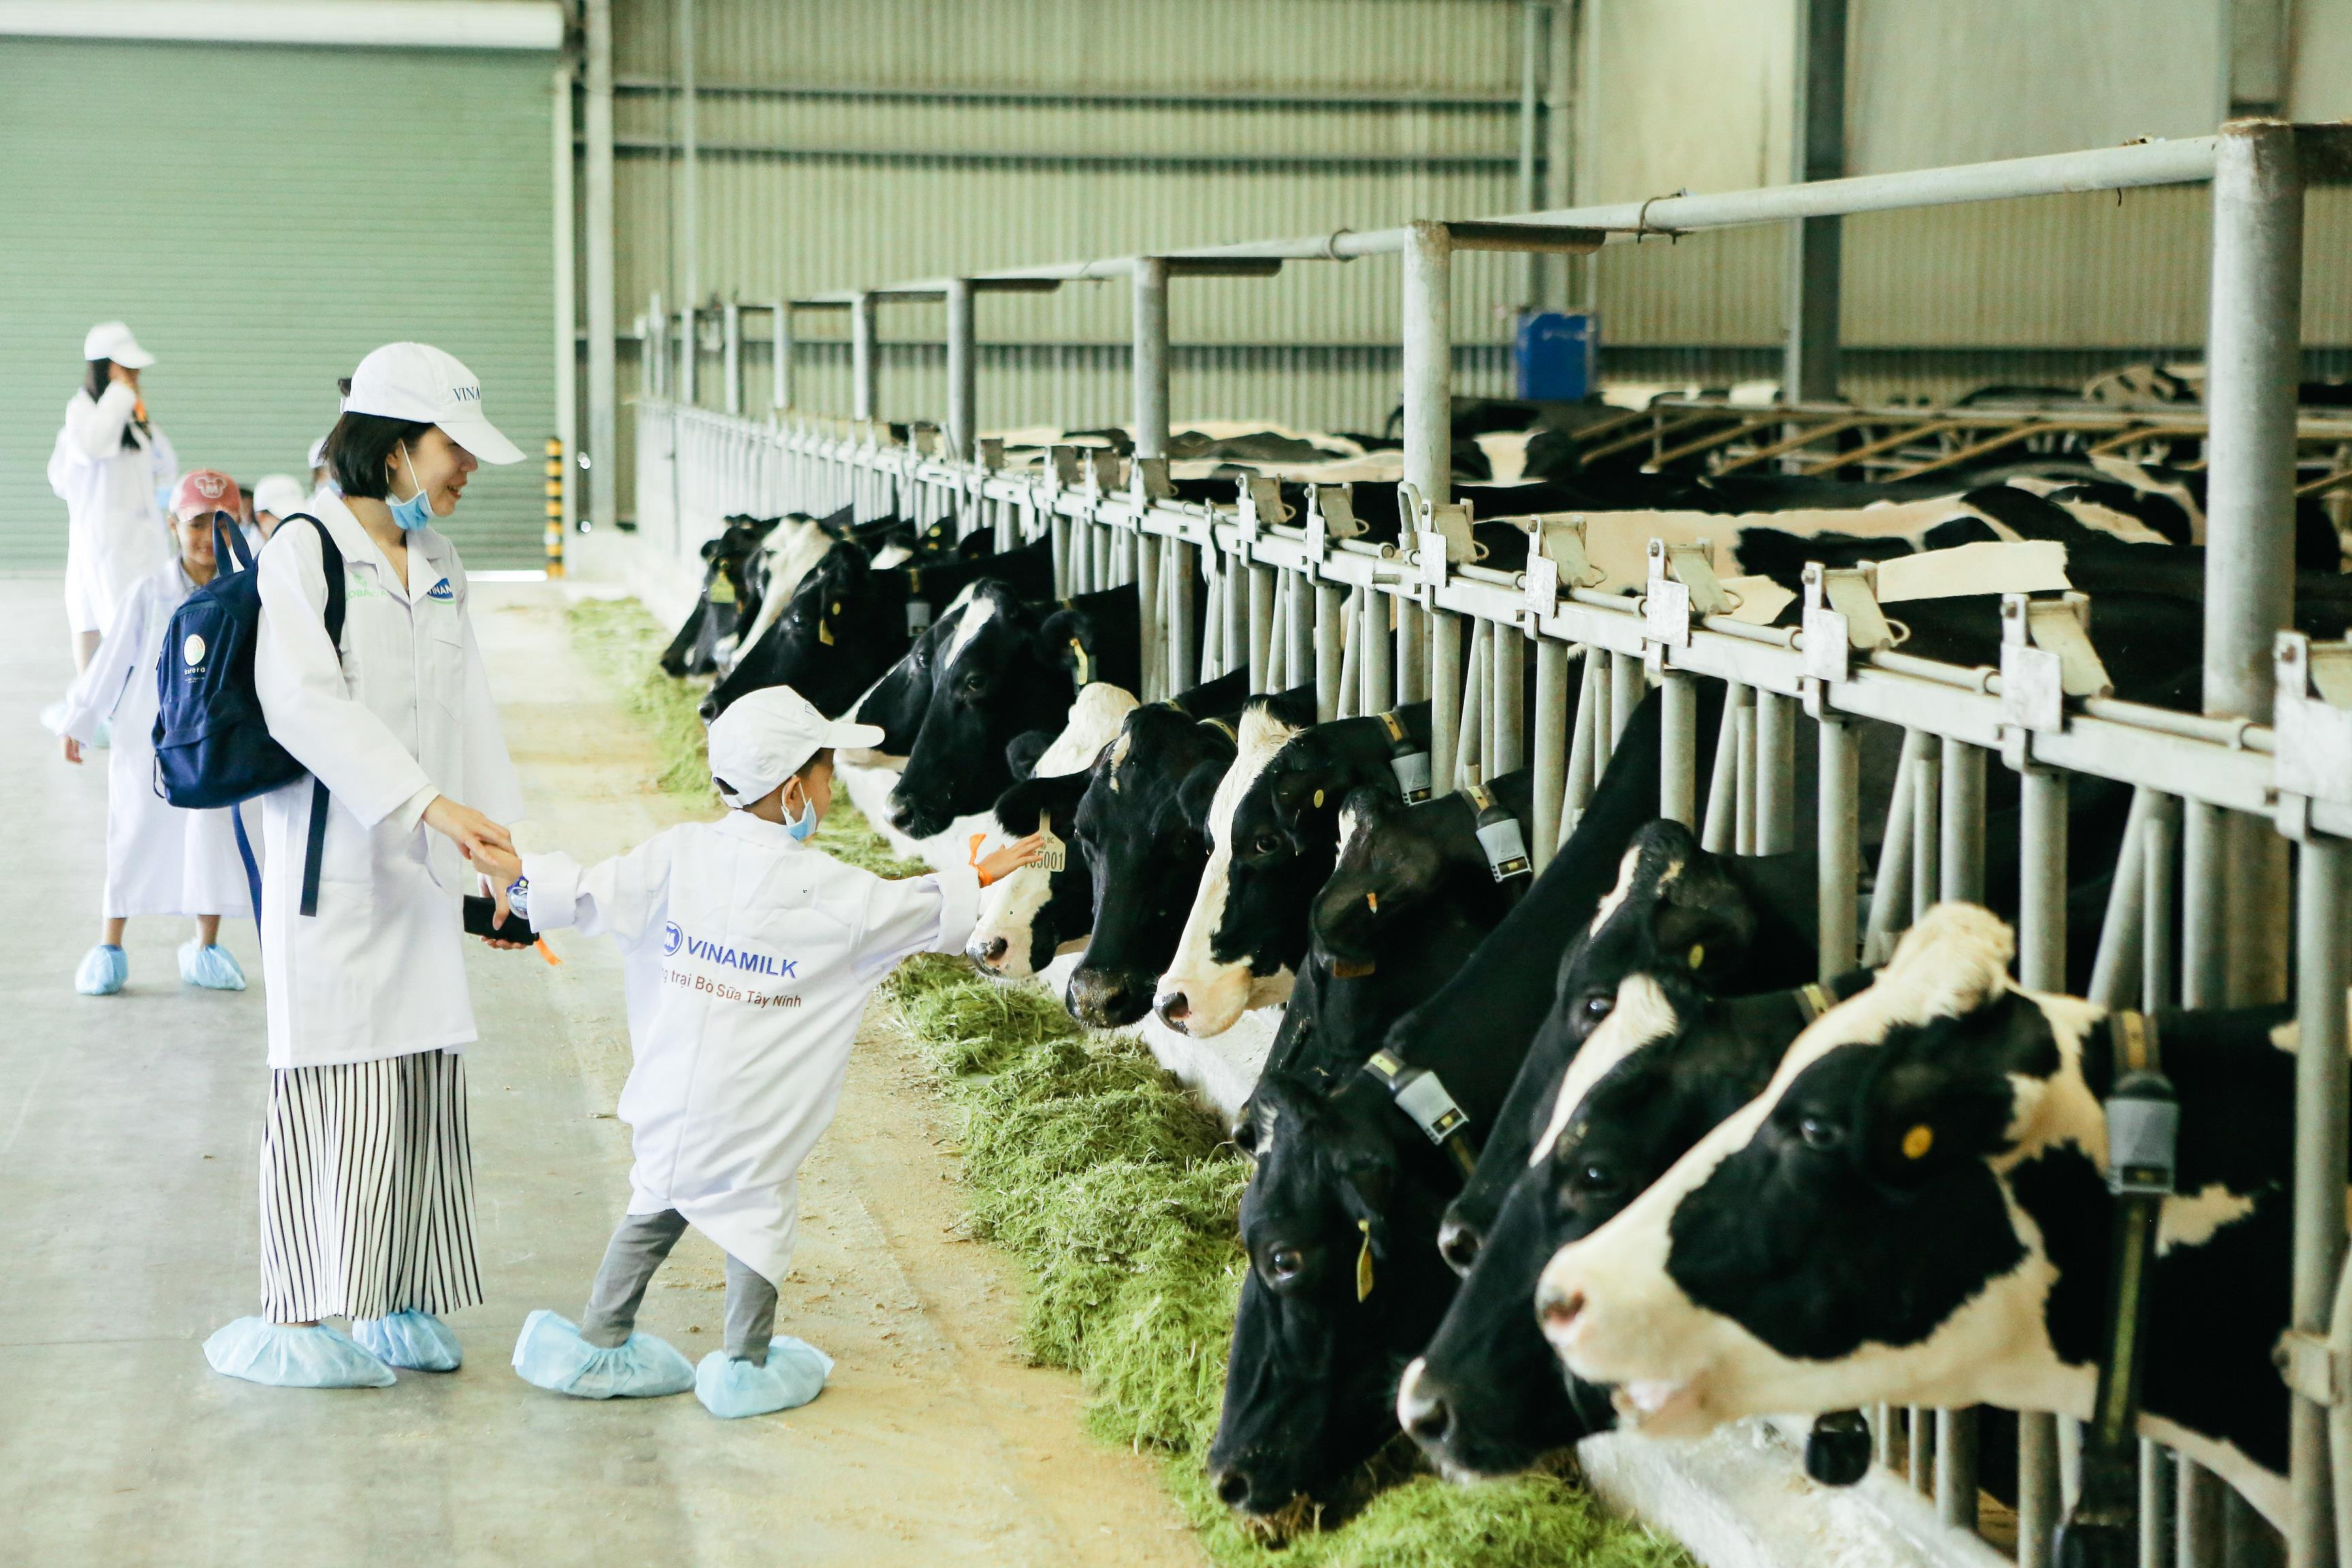 Trang trại bò sữa Organic của Vinamilk ở Tây Ninh.